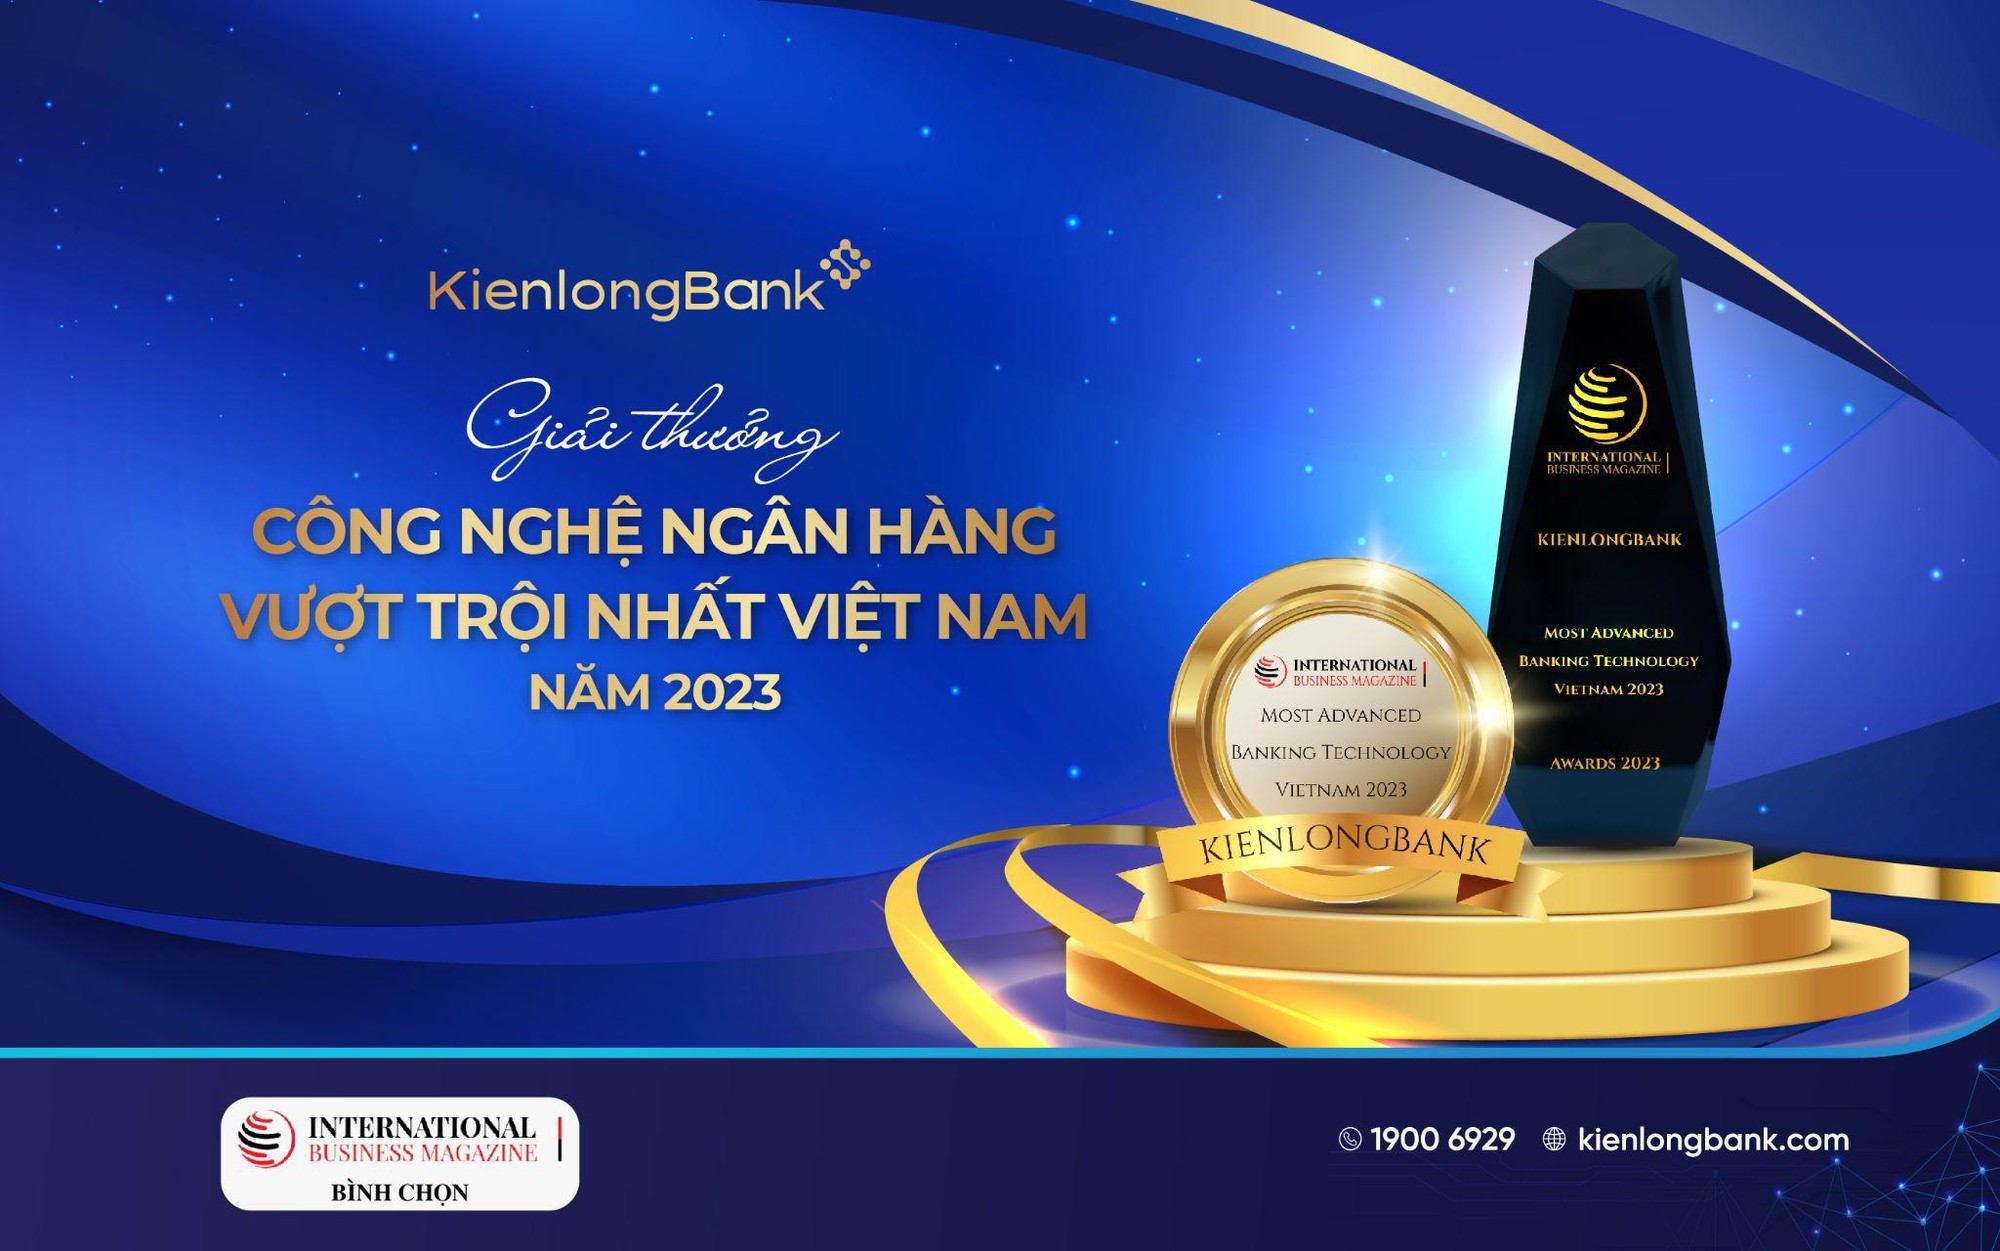 KienlongBank nhận giải thưởng quốc tế về “Công nghệ ngân hàng vượt trội nhất Việt Nam năm 2023” - Ảnh 1.